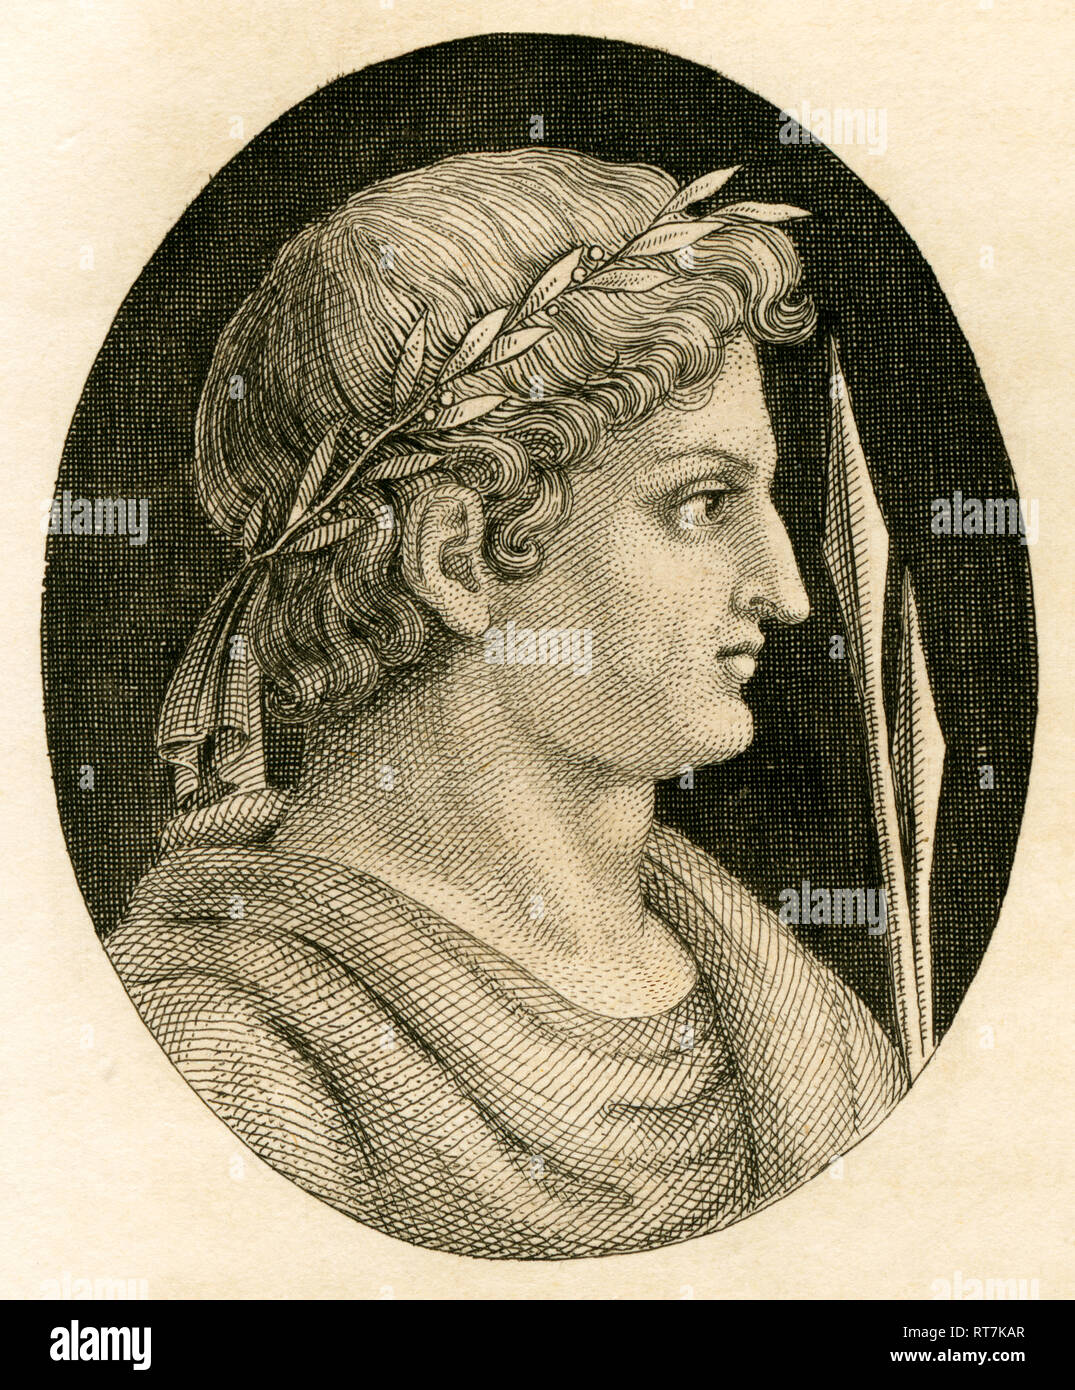 Scipio Aemilianus, político y estratega romano, grabado de Strahlheim copperplate, aproximadamente 1840ª., Copyright del artista no ha de ser borrado Foto de stock